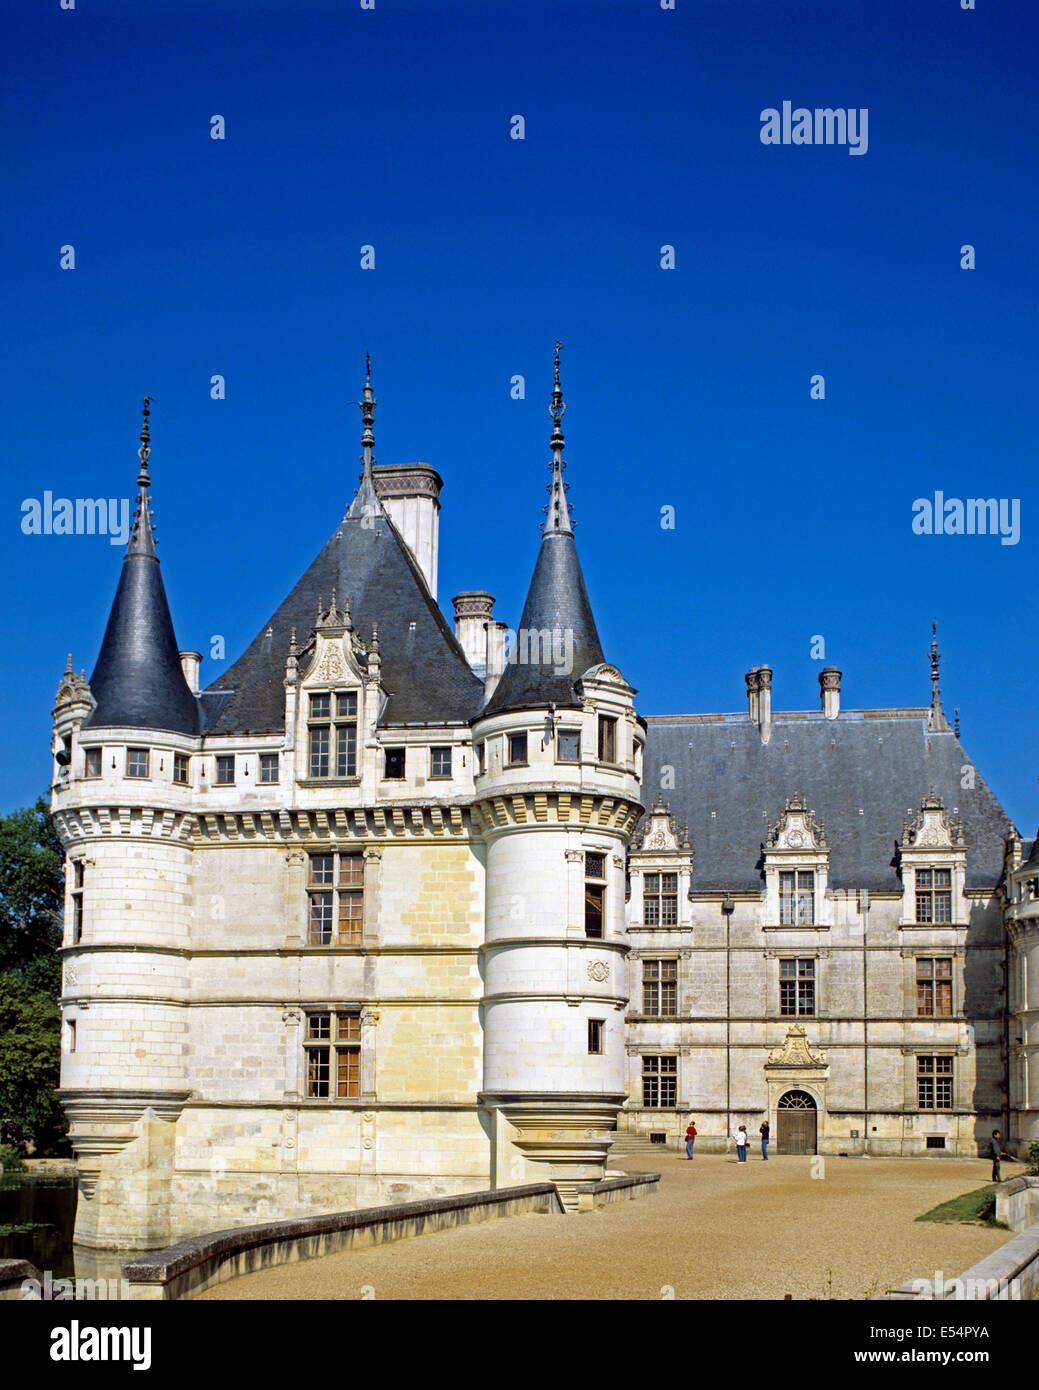 The Chateau de Chaumont, Chaumont-sur-Loire, Loir-et-Cher, France Stock Photo